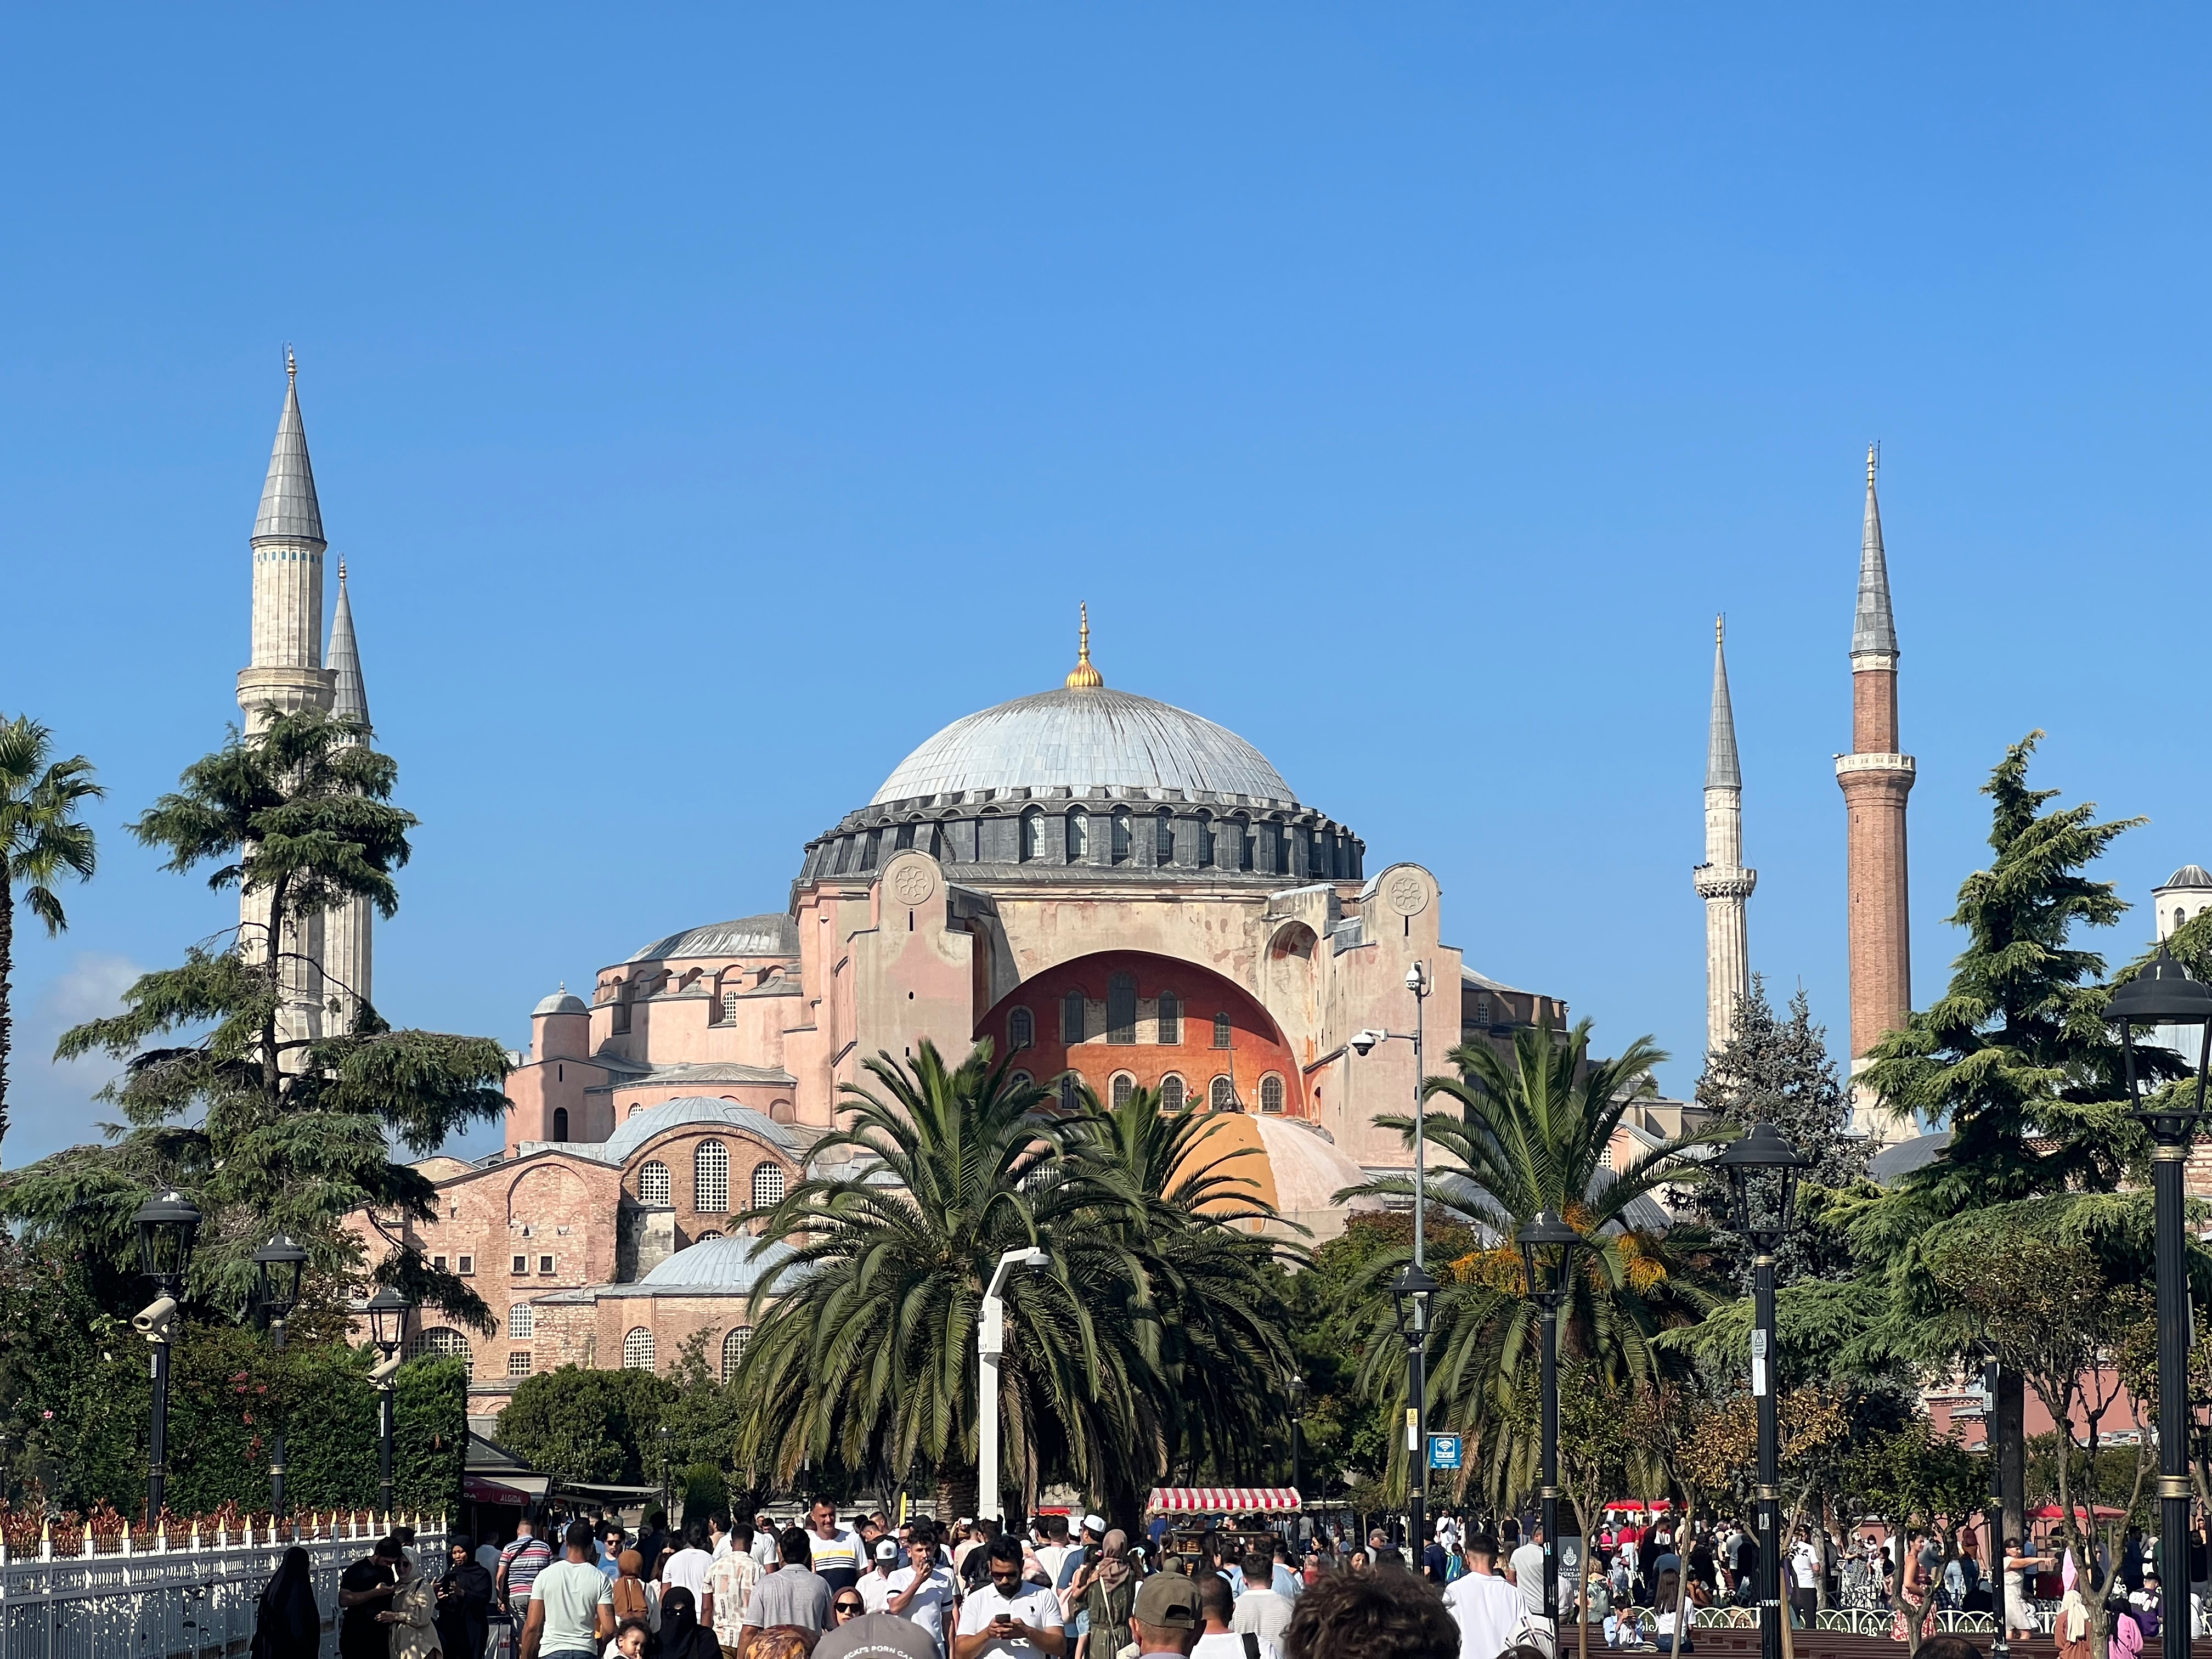 Blick auf die Hagia Sophia